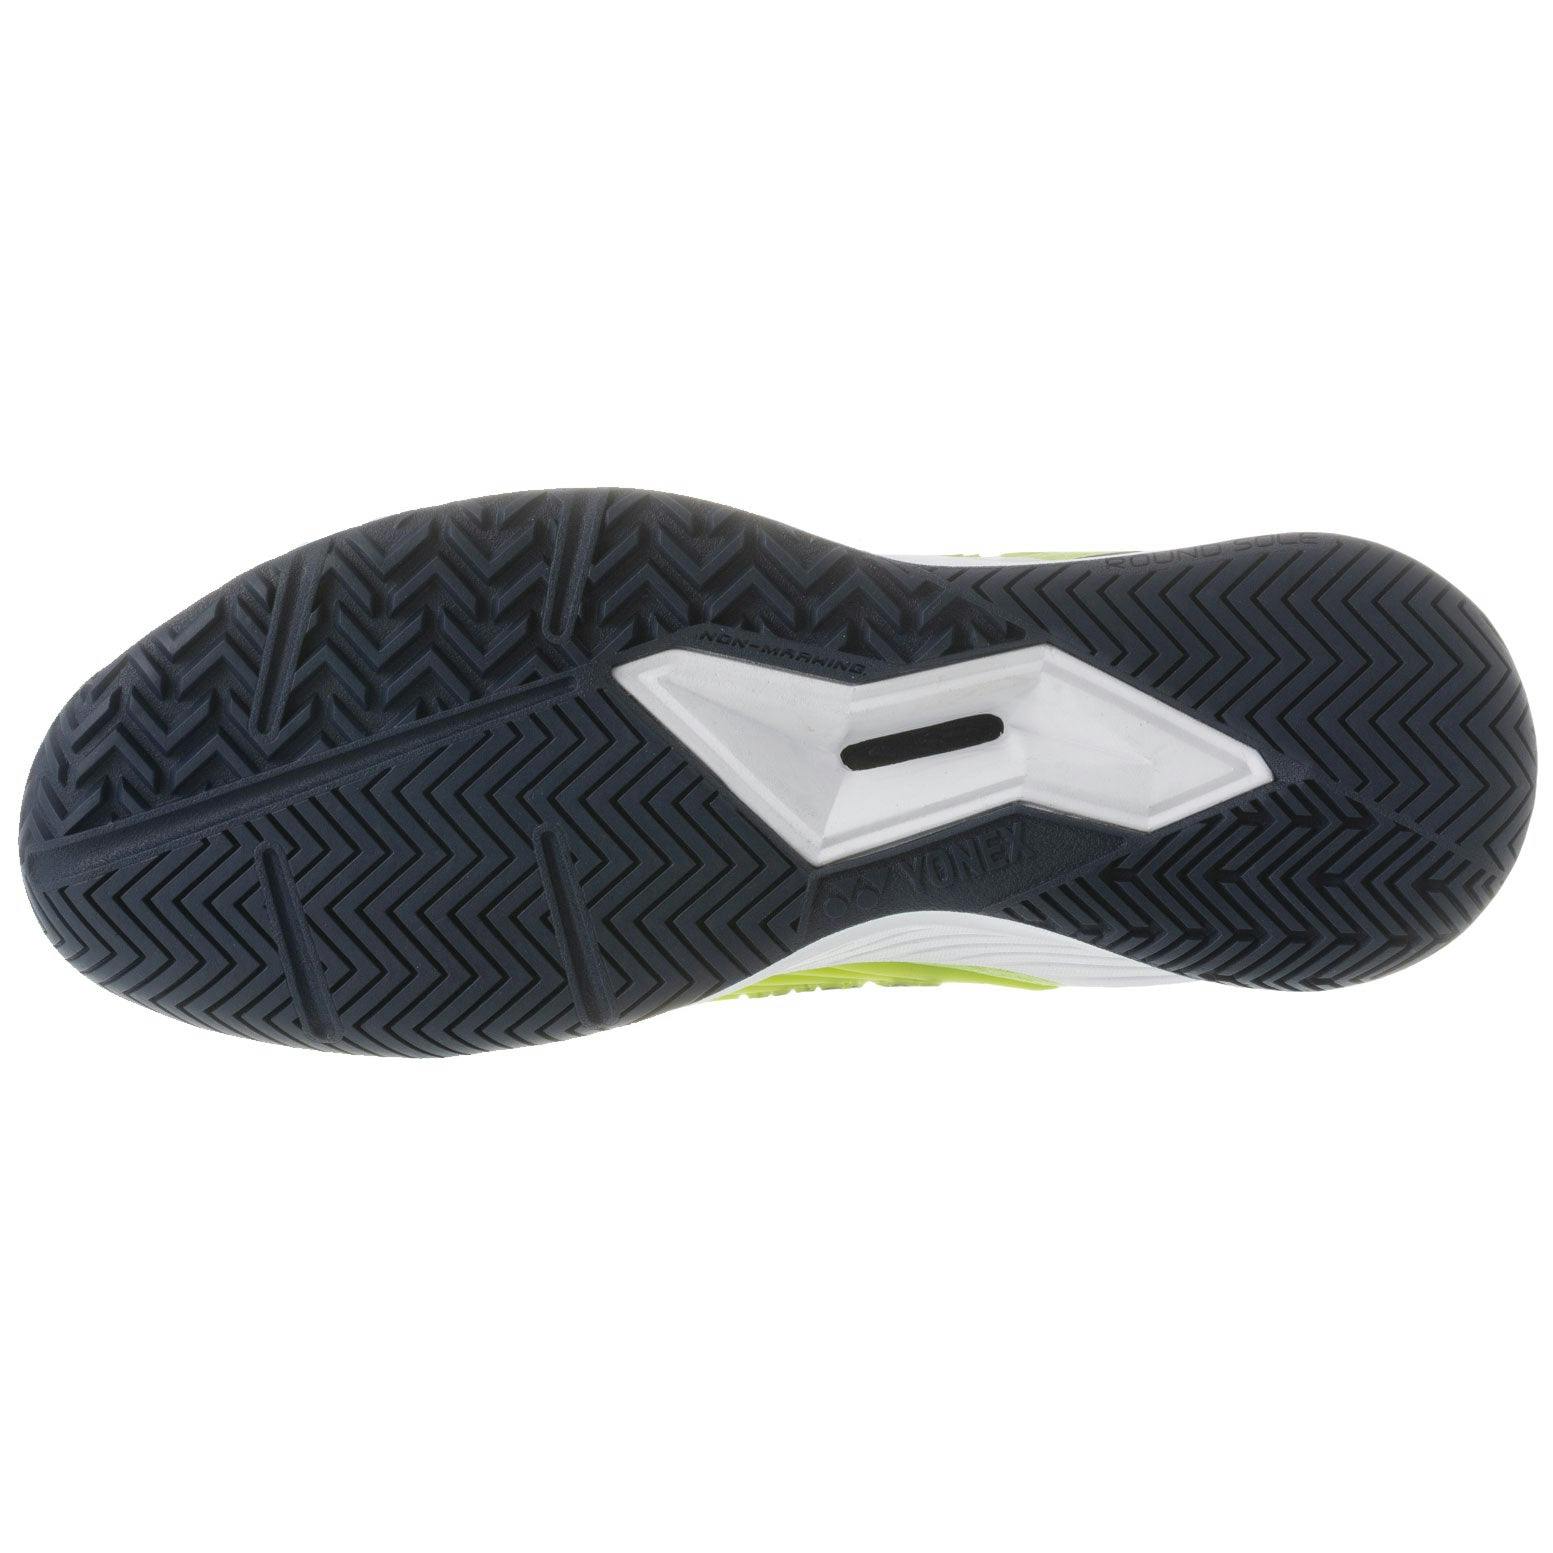 Yonex Eclipsion 4 Womens Tennis Shoes - Fresh Lime Fl / B Medium / 7.5